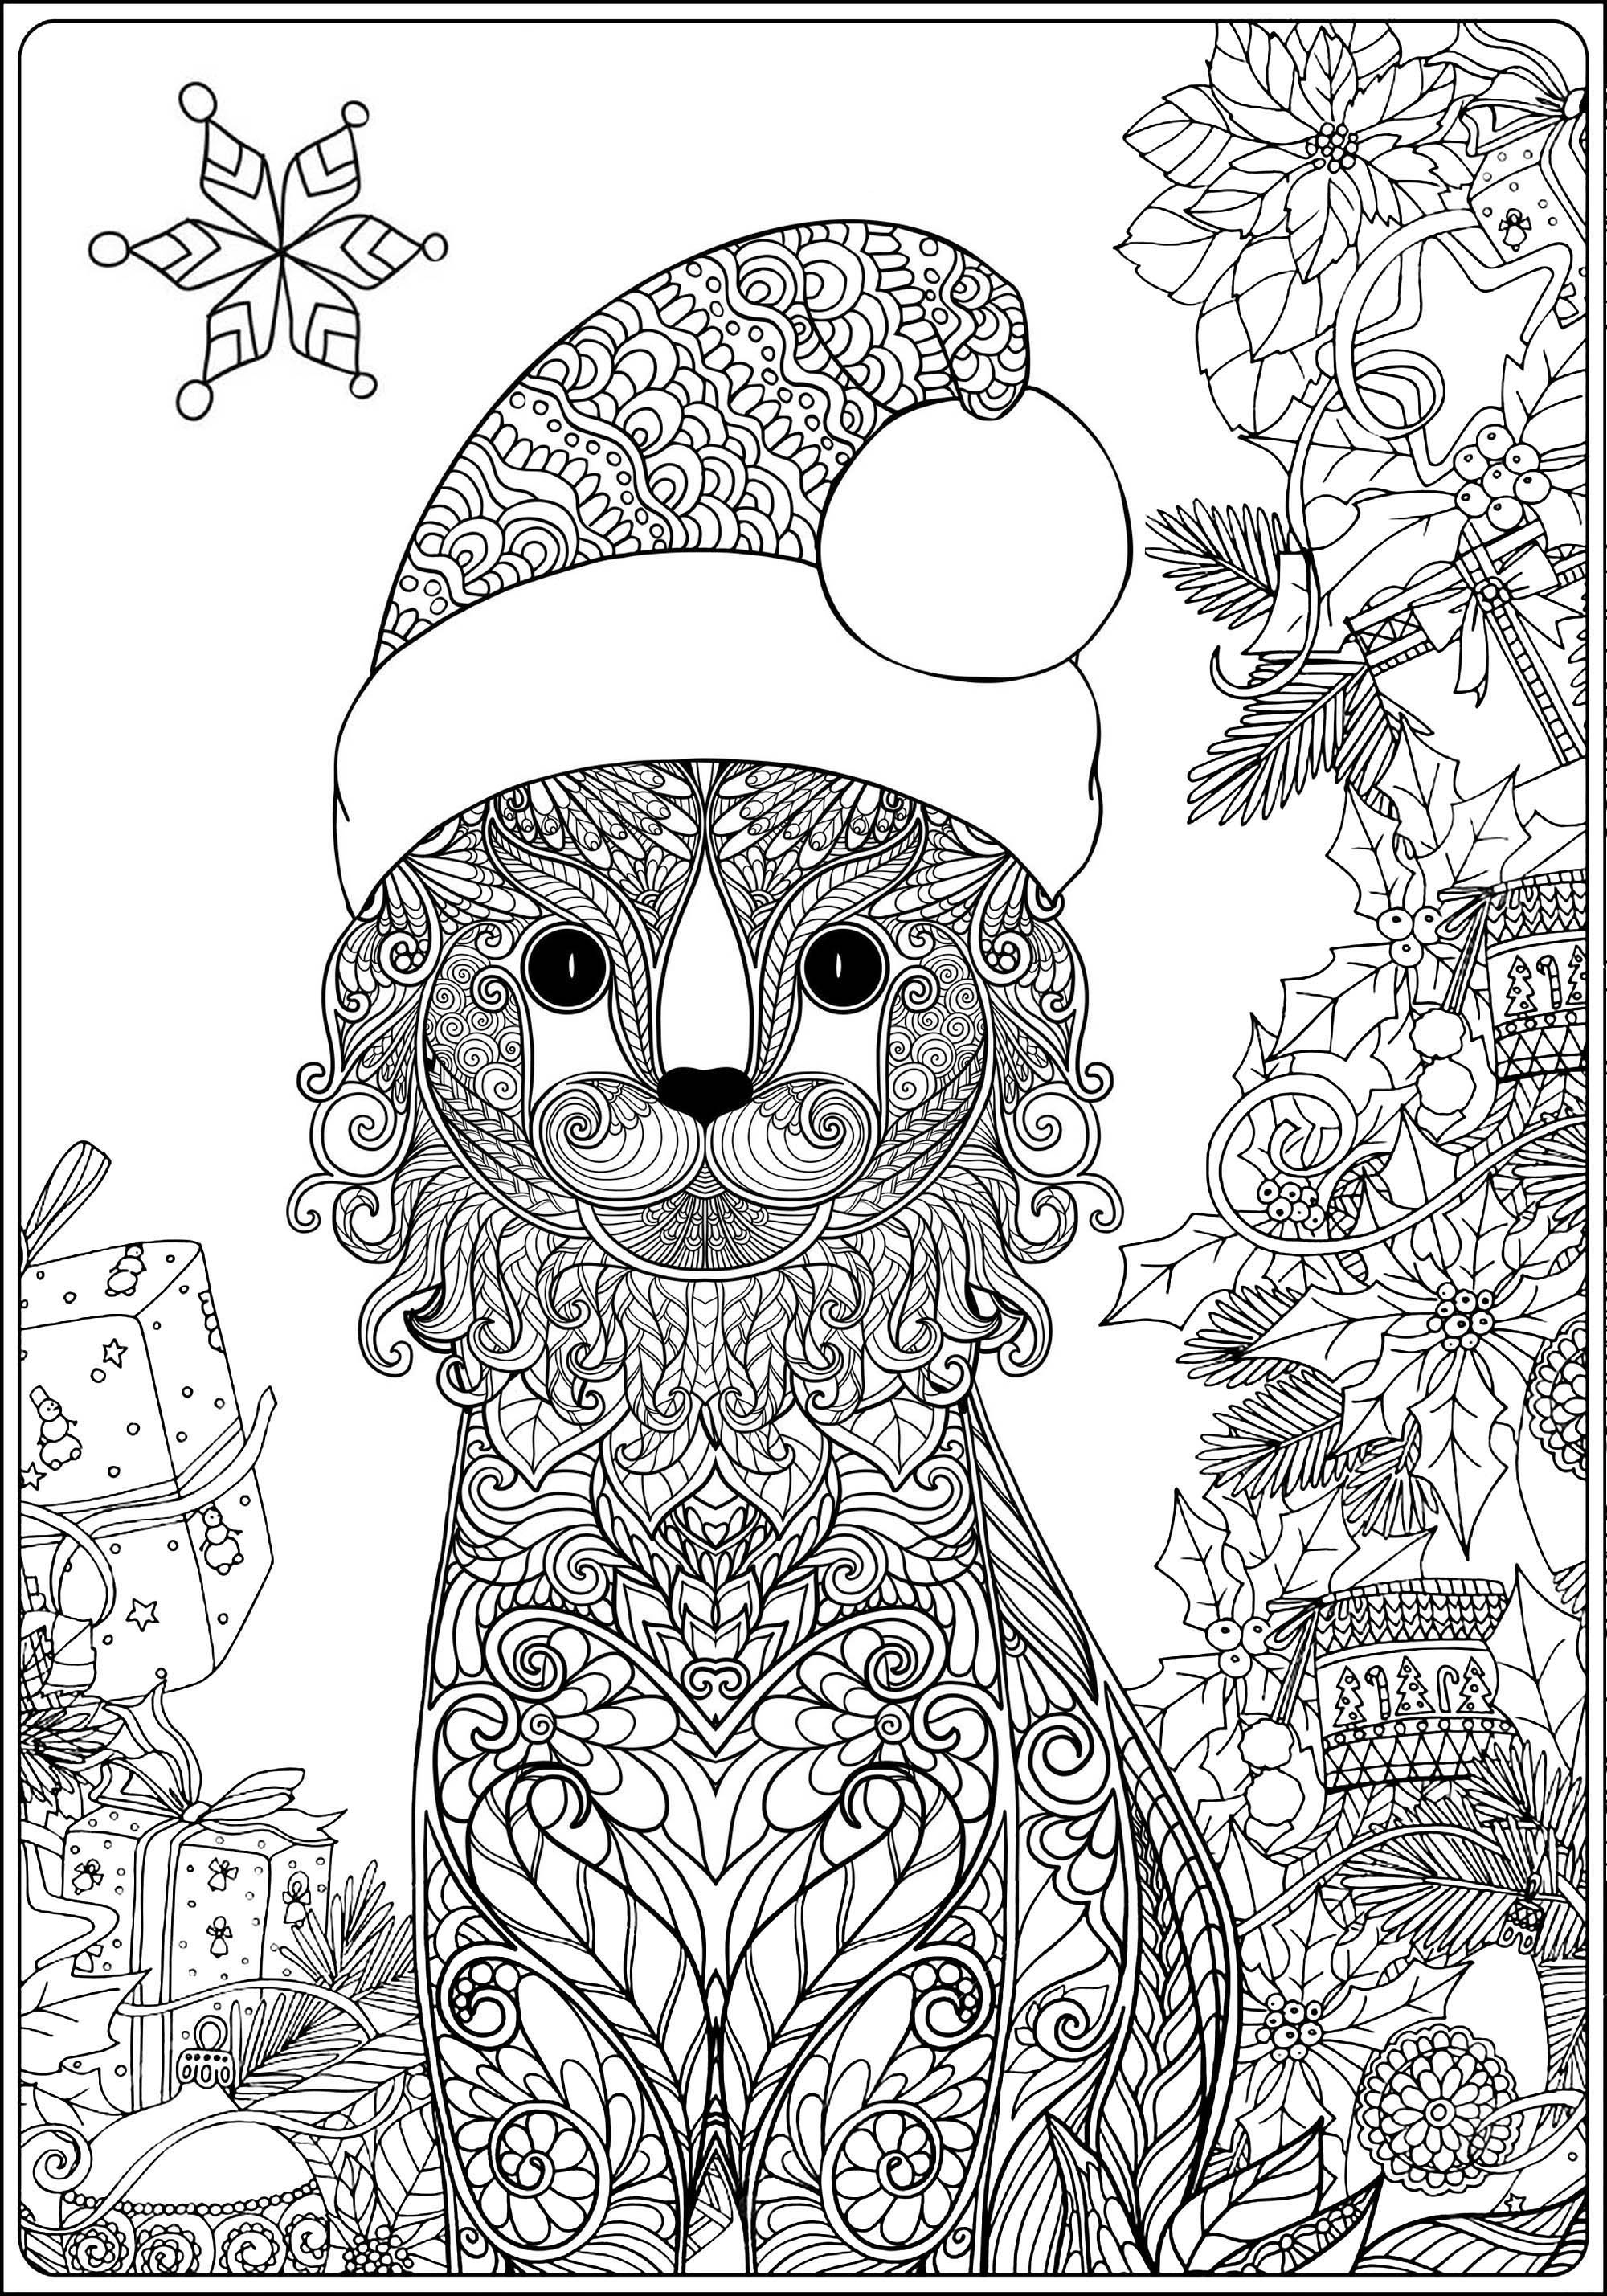 Disegni da Colorare per Adulti : Natale - 2, Fonte : 123rf   Artista : Elena Besedina